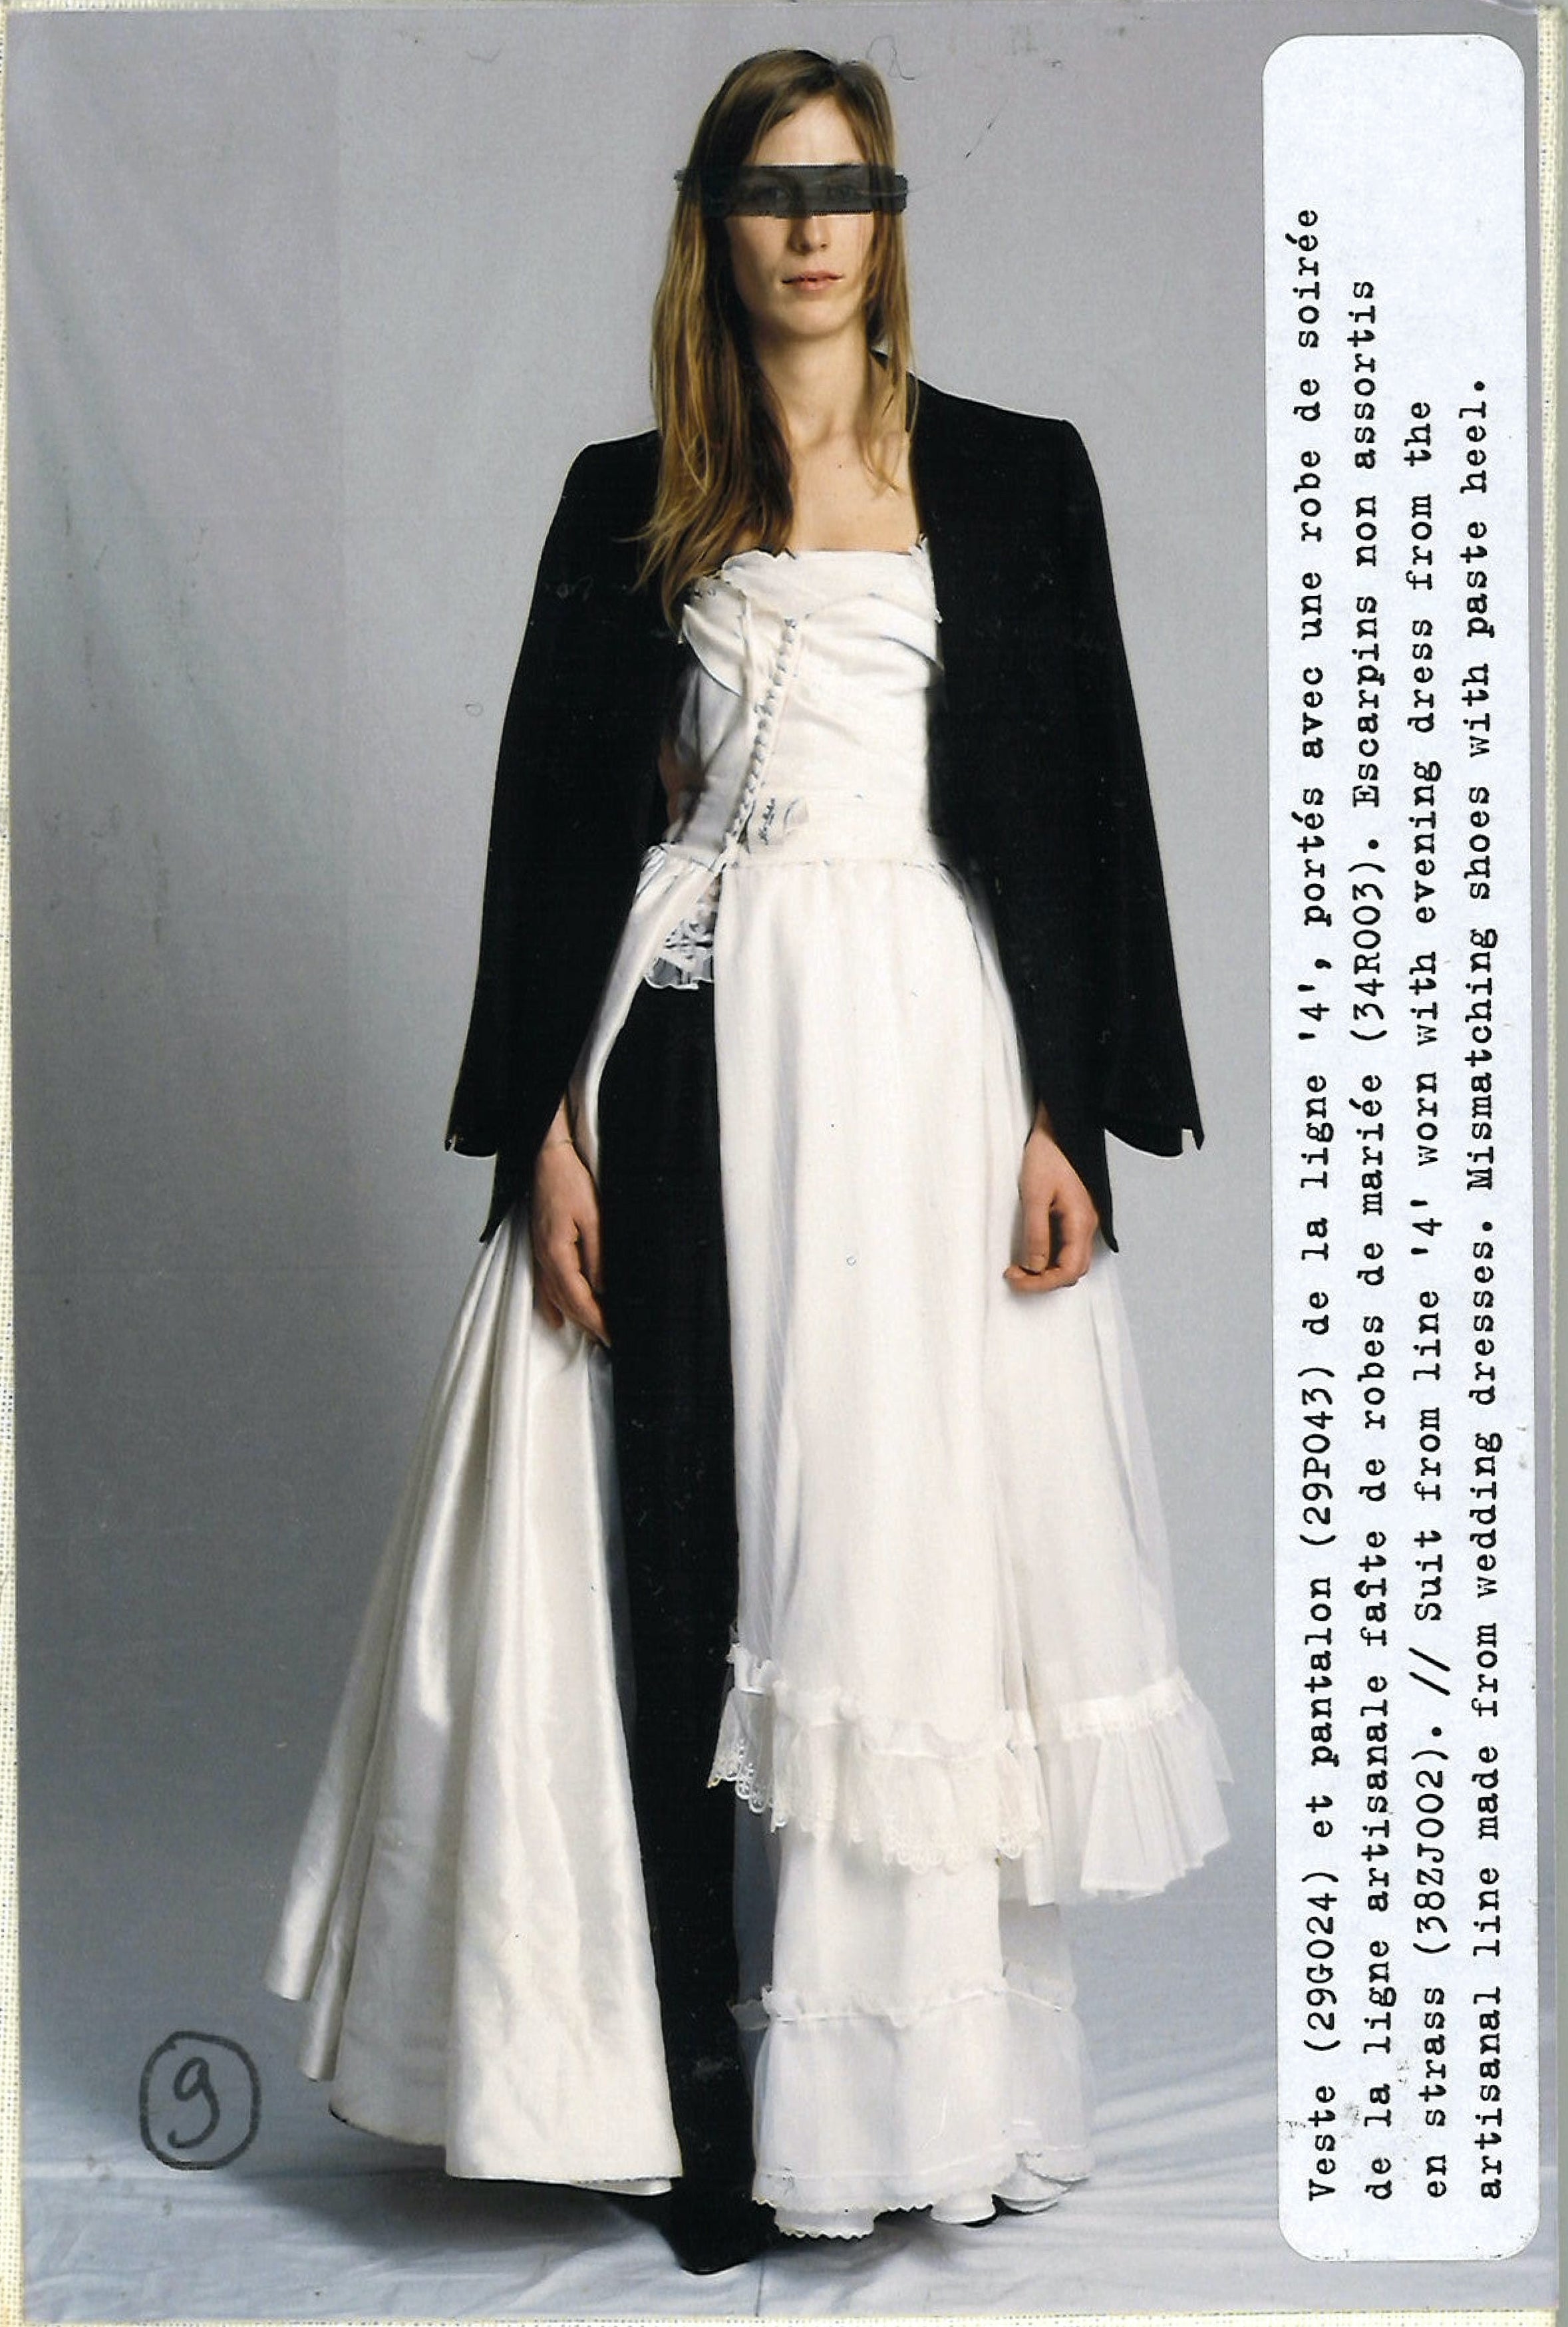 Maison Martin Margiela Lookbook
Womenswear Collection Autumn/Winter 2005-06